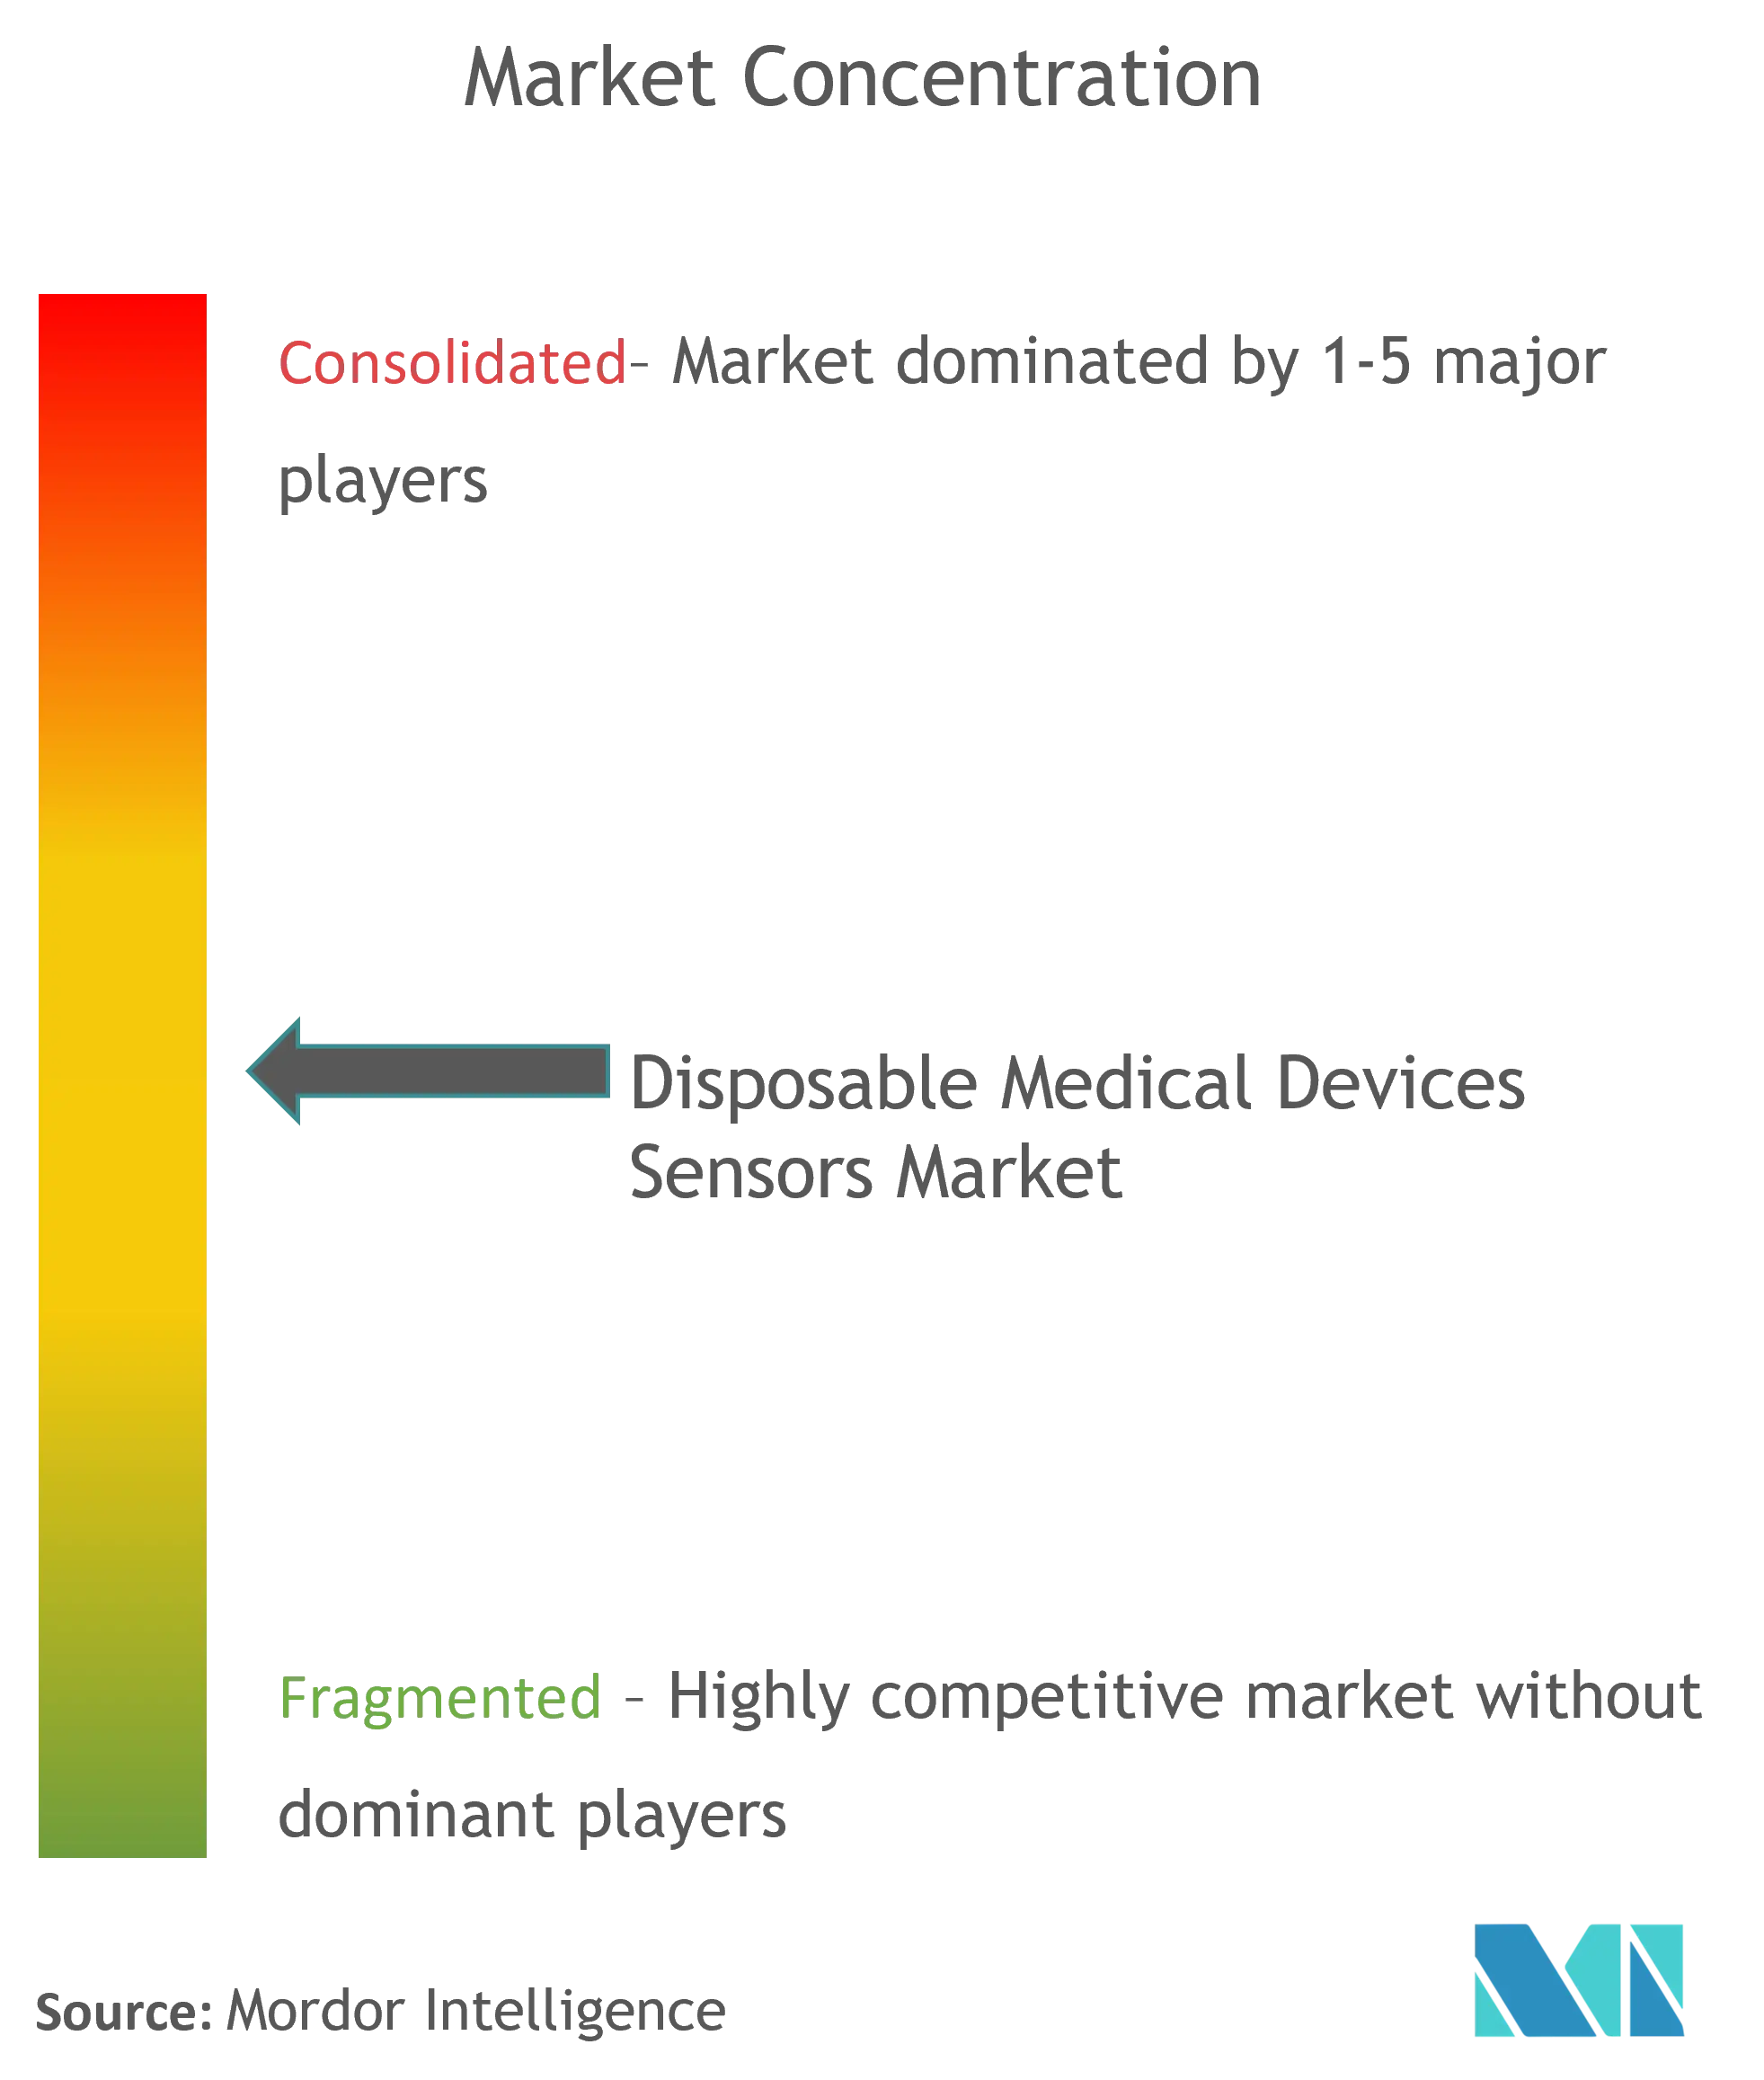 Sensores globales de dispositivos médicos desechablesConcentración del Mercado